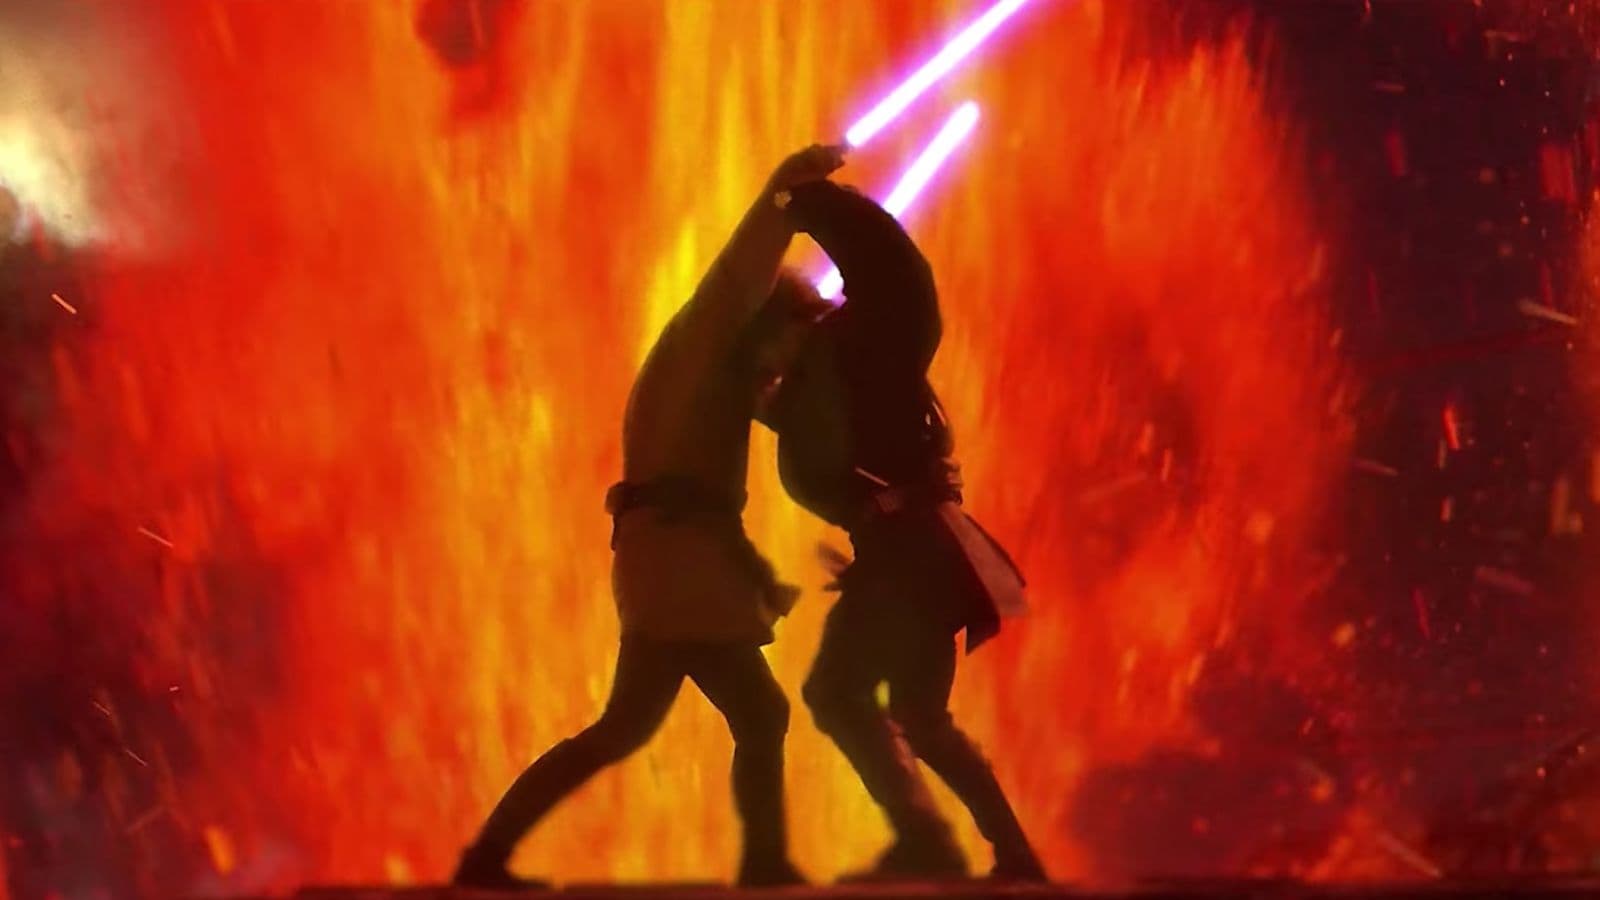 Star Wars – Episodio III: La venganza de los sith